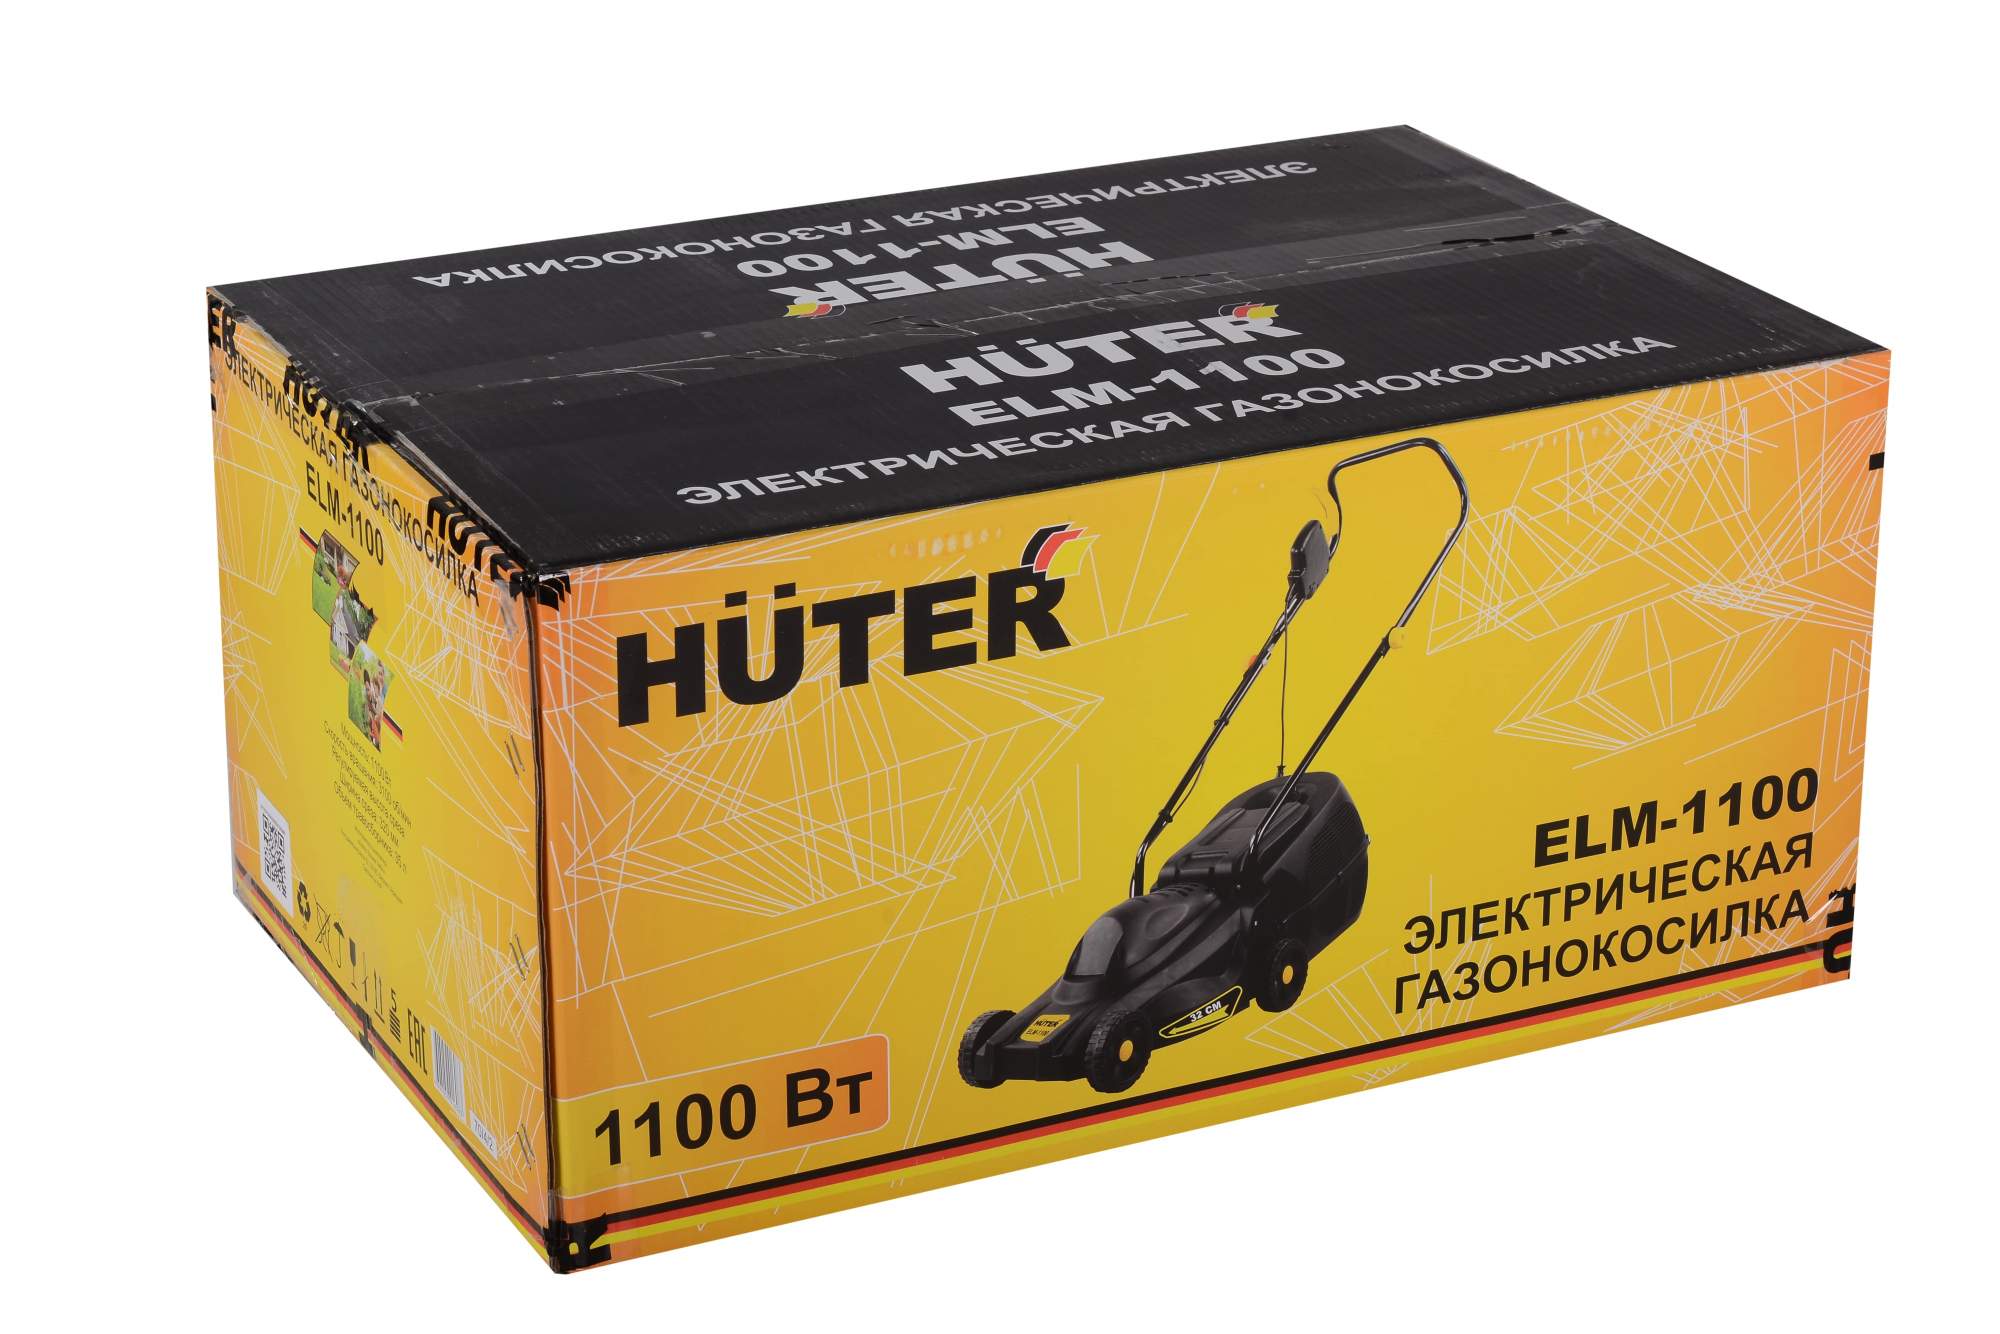  электрическая ELM-1100 Huter -  , цены на .